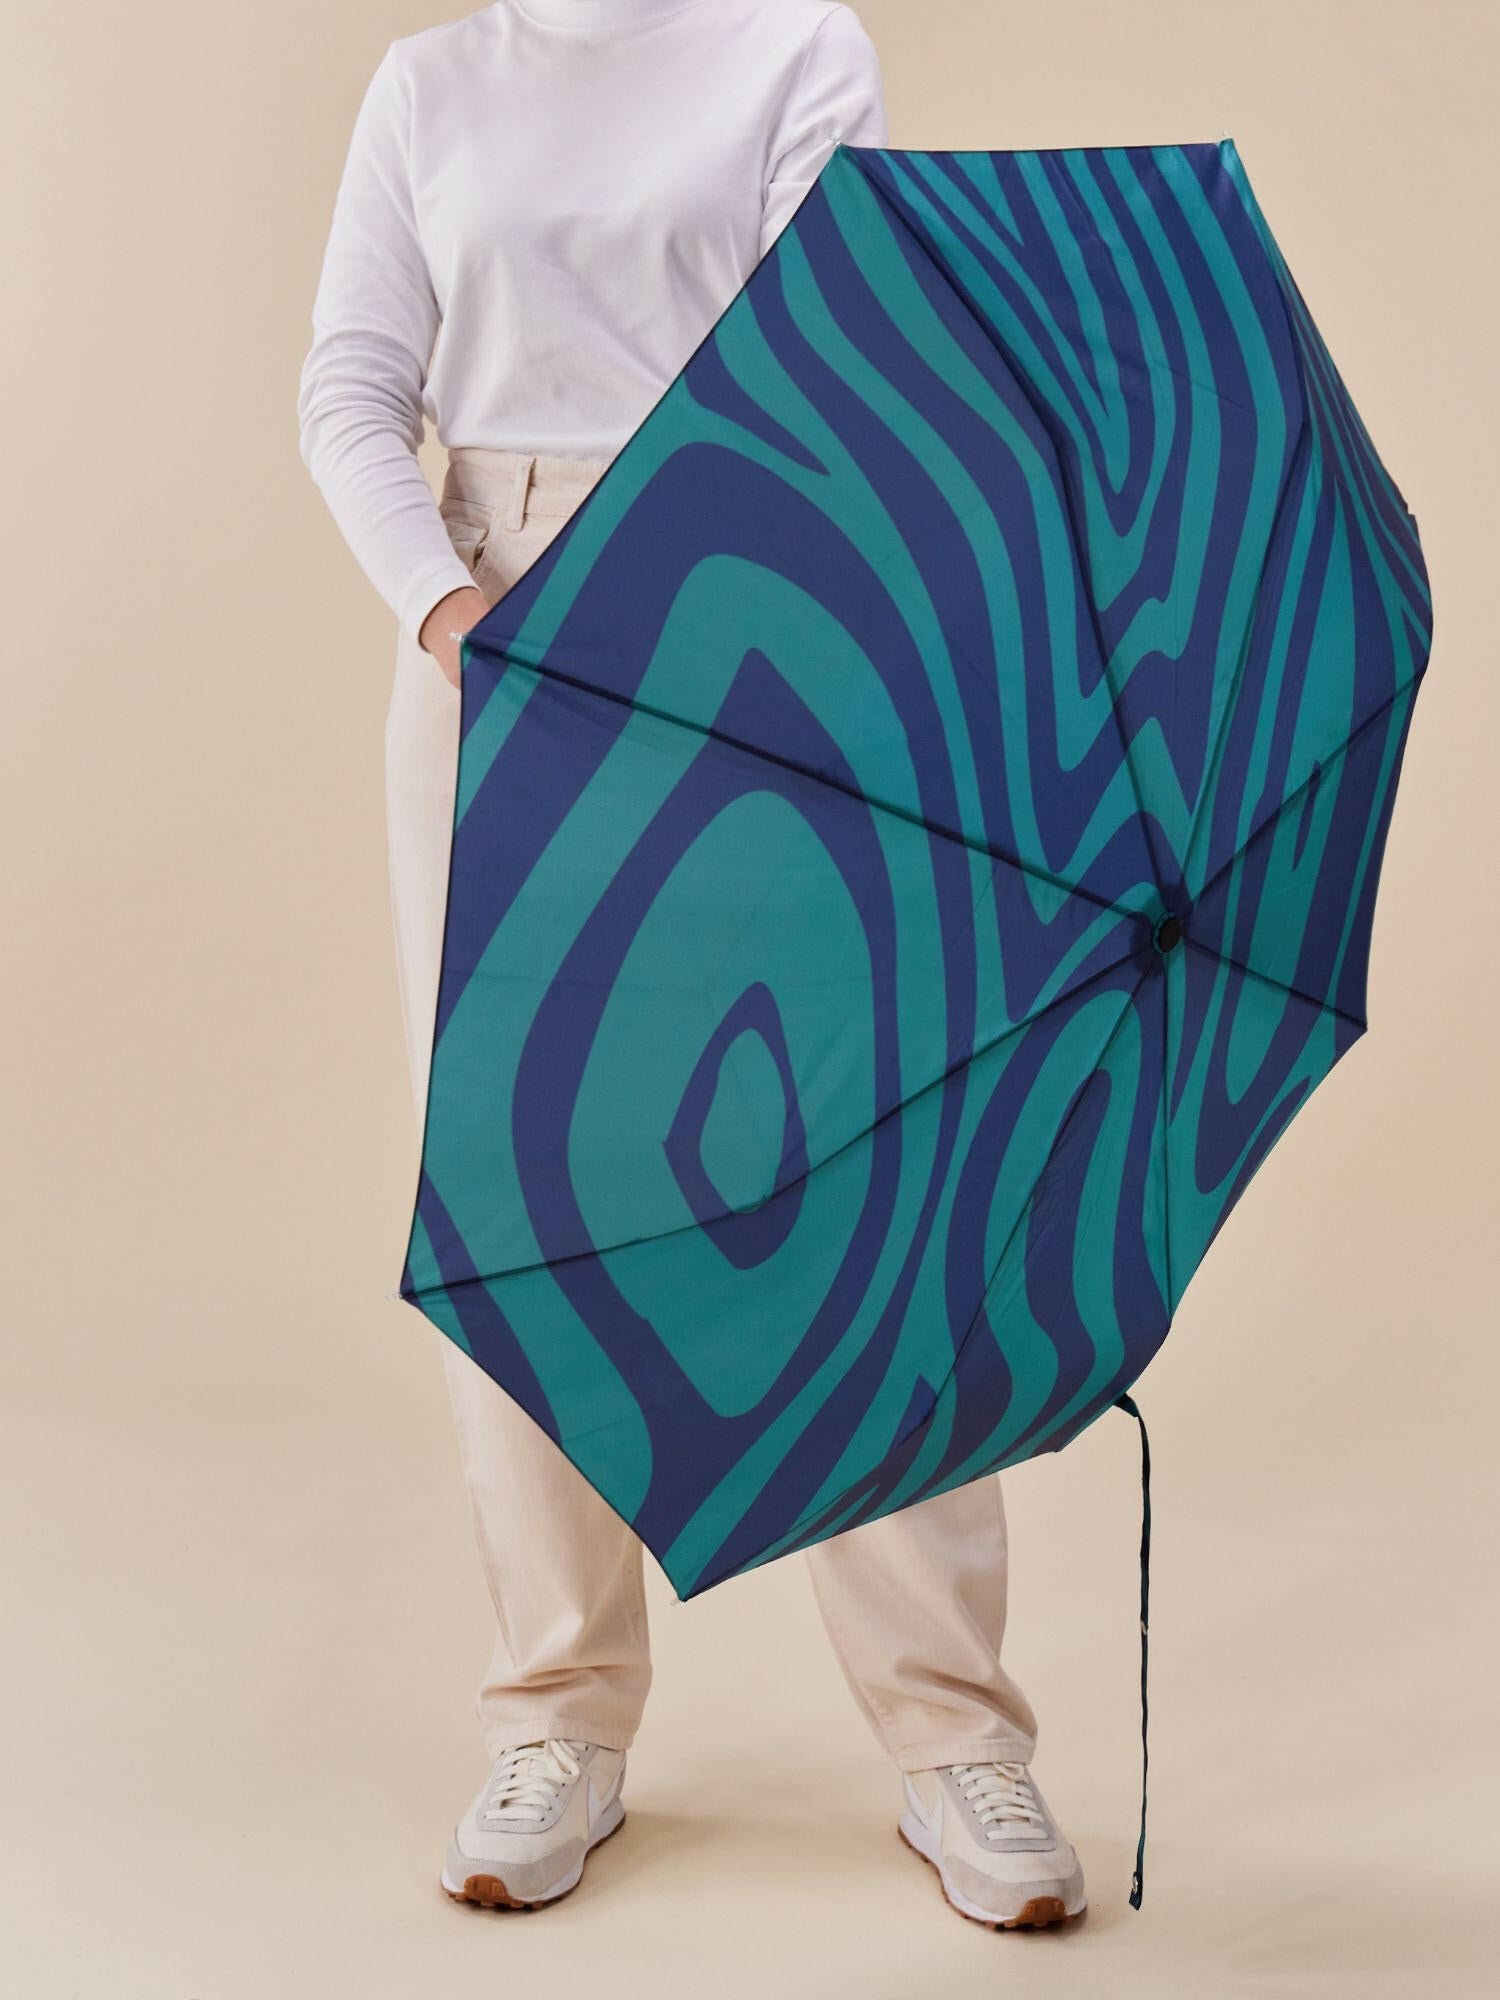 Swirl in Blue Compact Duck Umbrella.